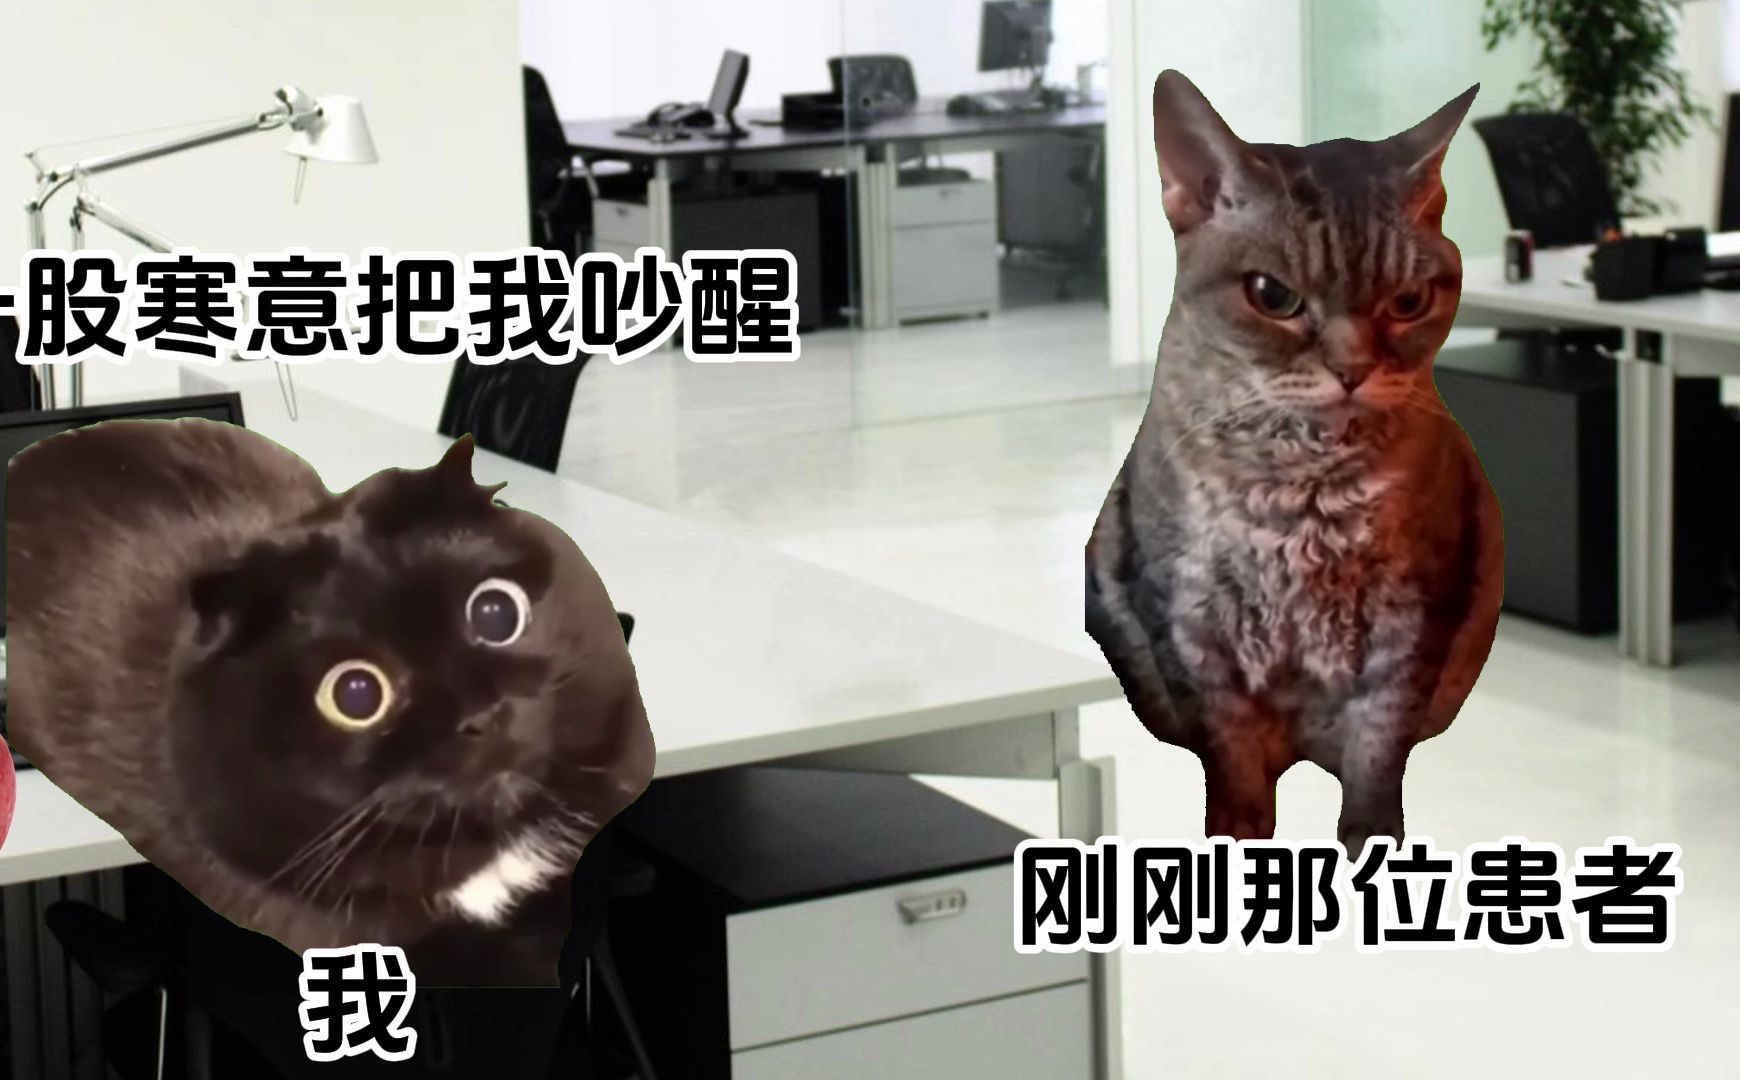 【猫meme】精神科夜班的日常-睡眠科